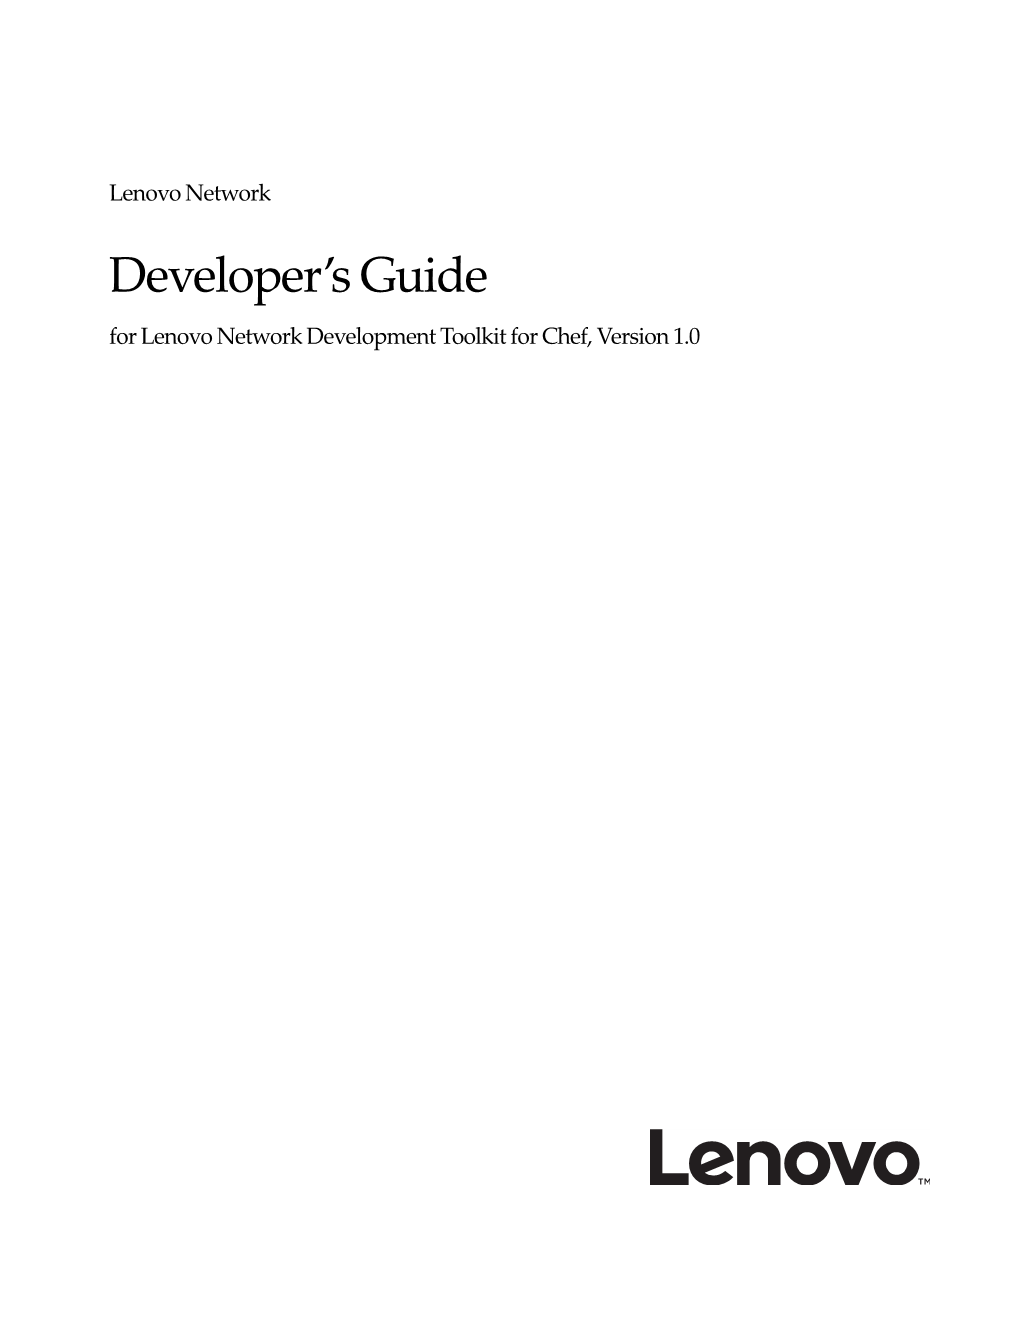 Developer's Guide for Lenovo Network Development Toolkit for Chef